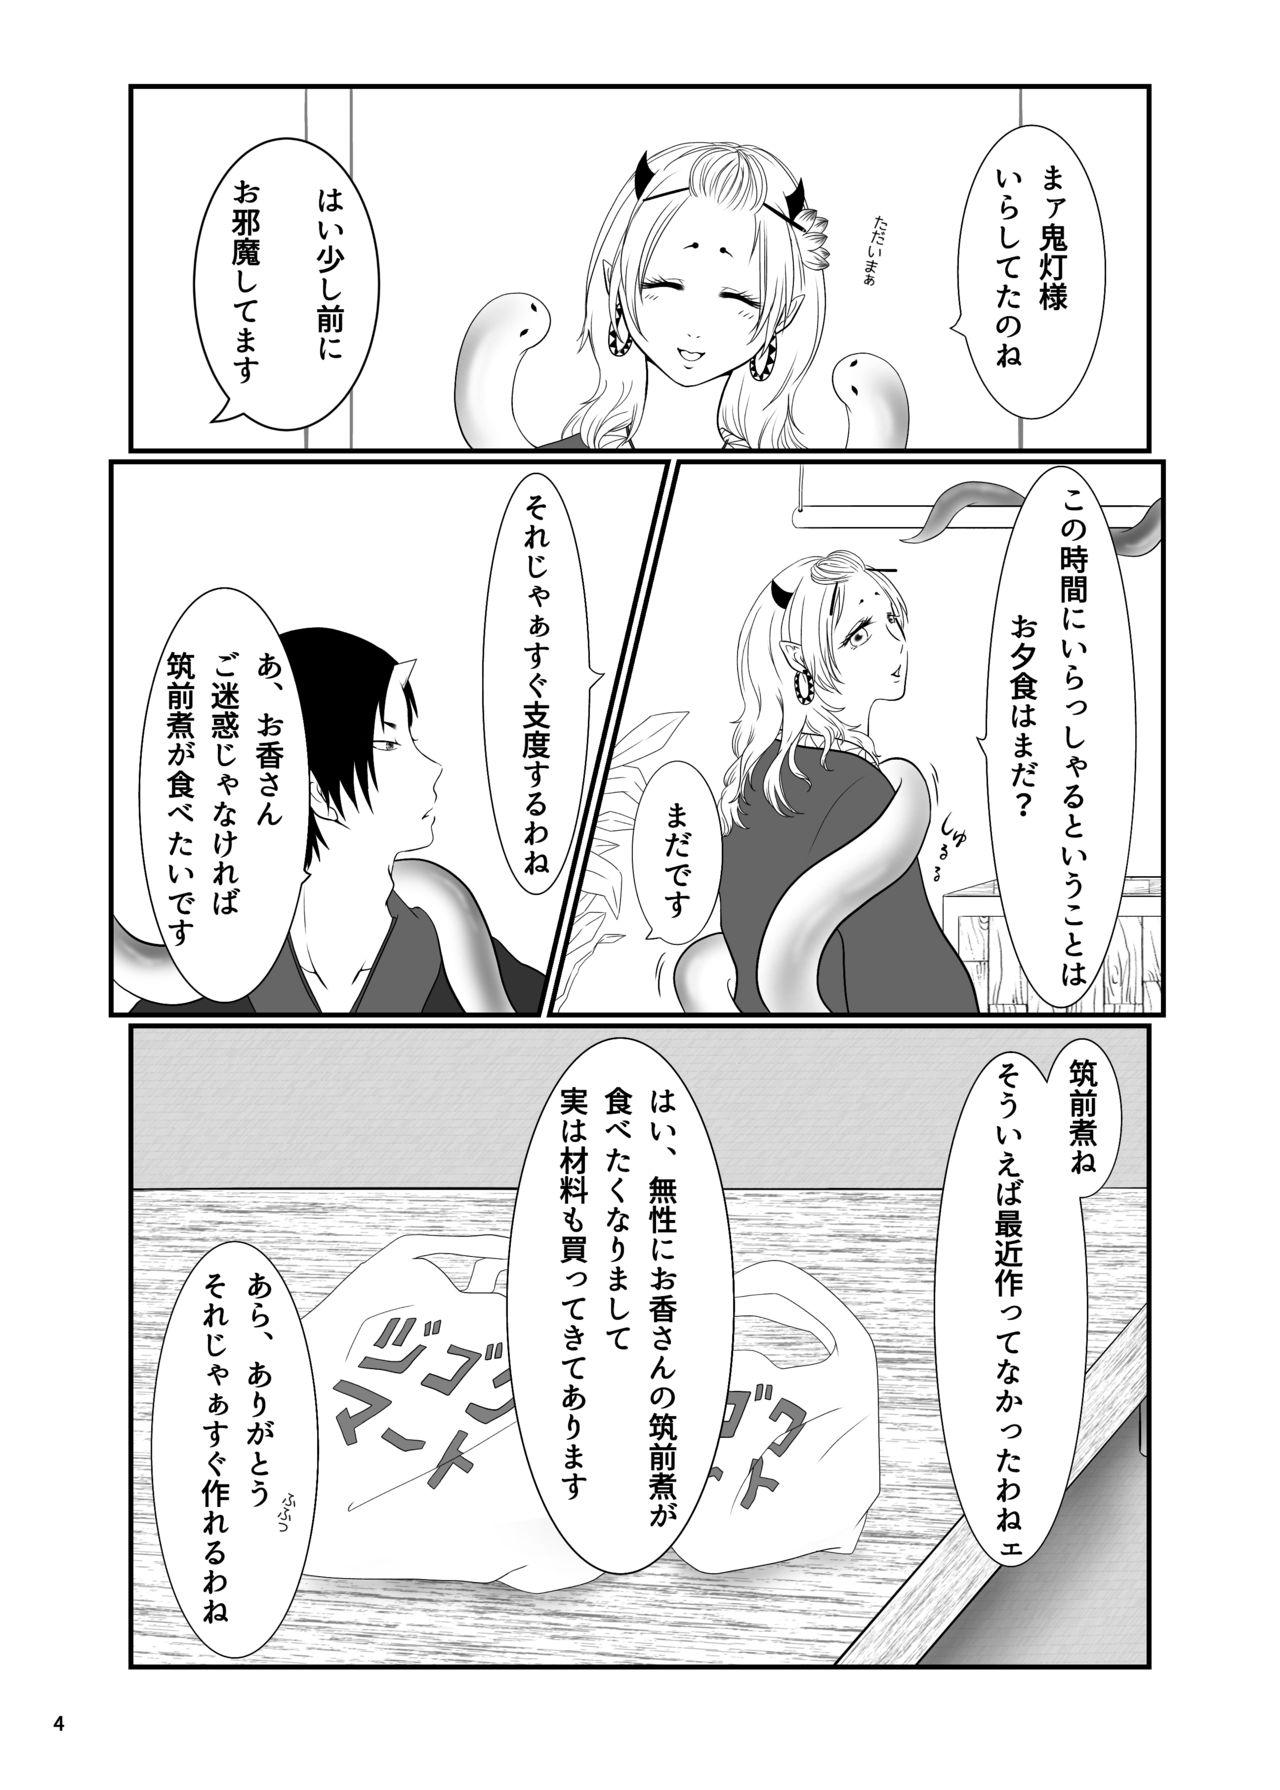 Fucking Girls Touni Anata no Mono - Hoozuki no reitetsu Ruiva - Page 3